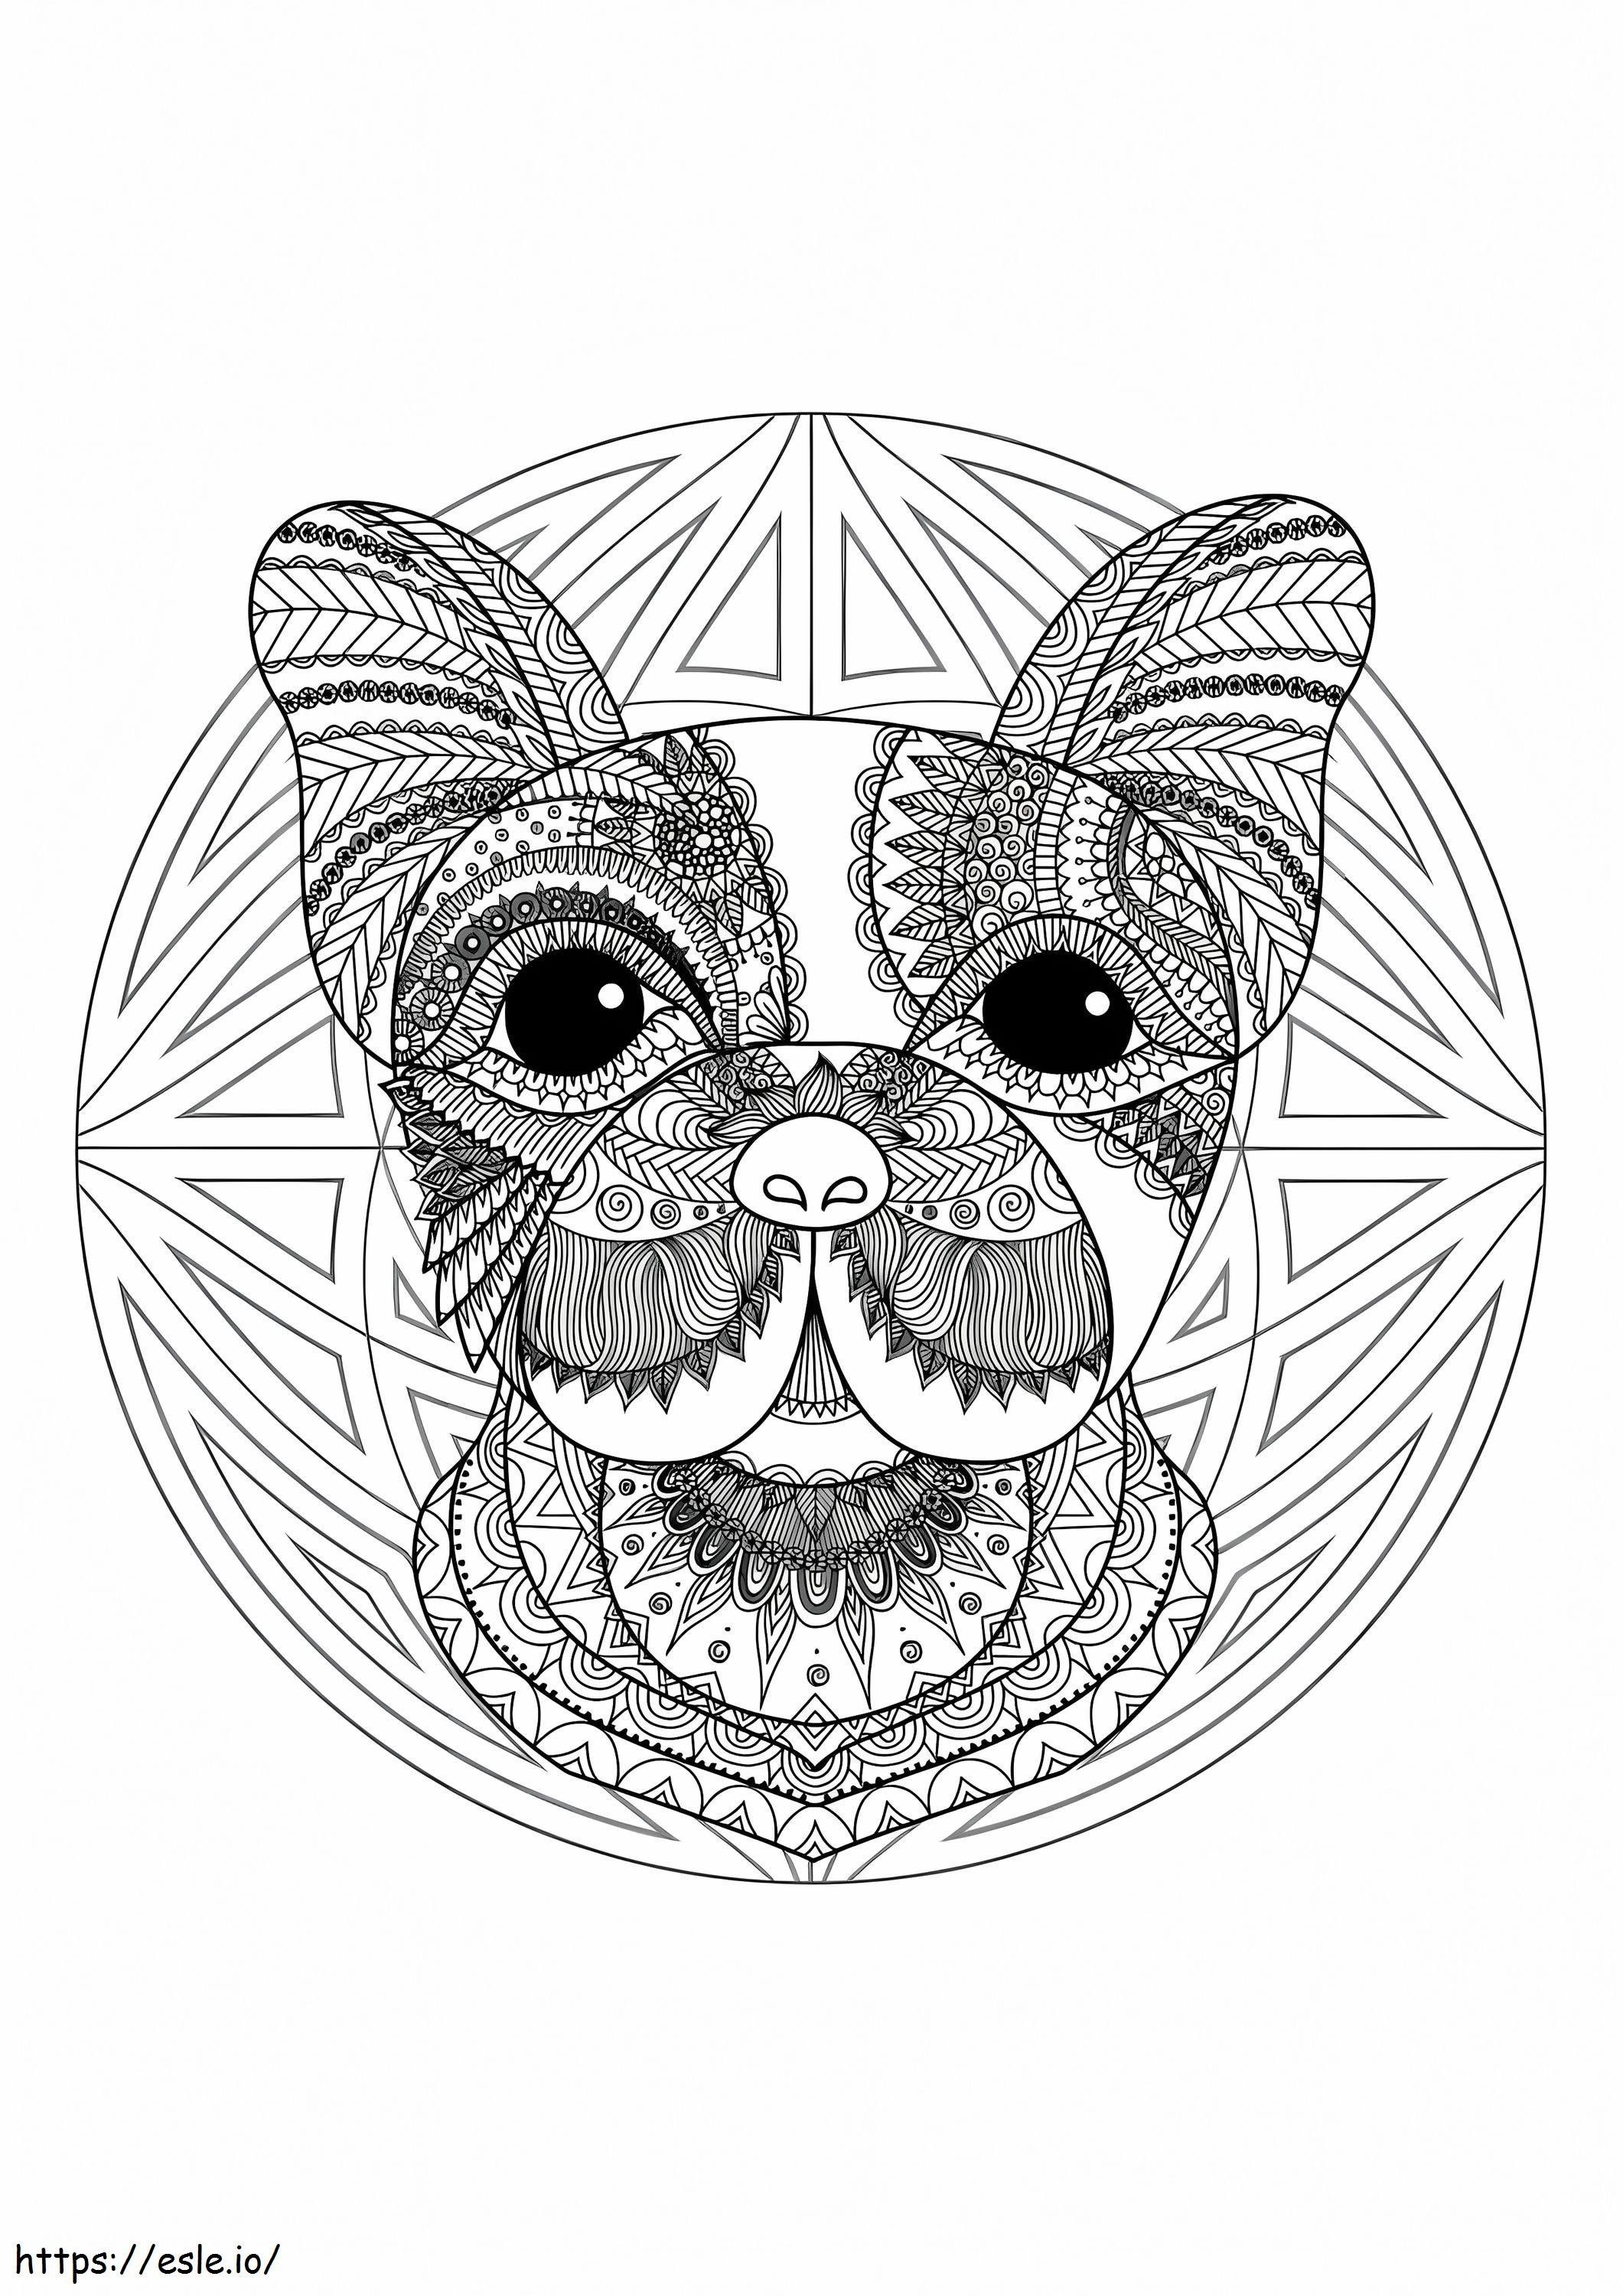 Mandala degli animali del bulldog 724X1024 da colorare